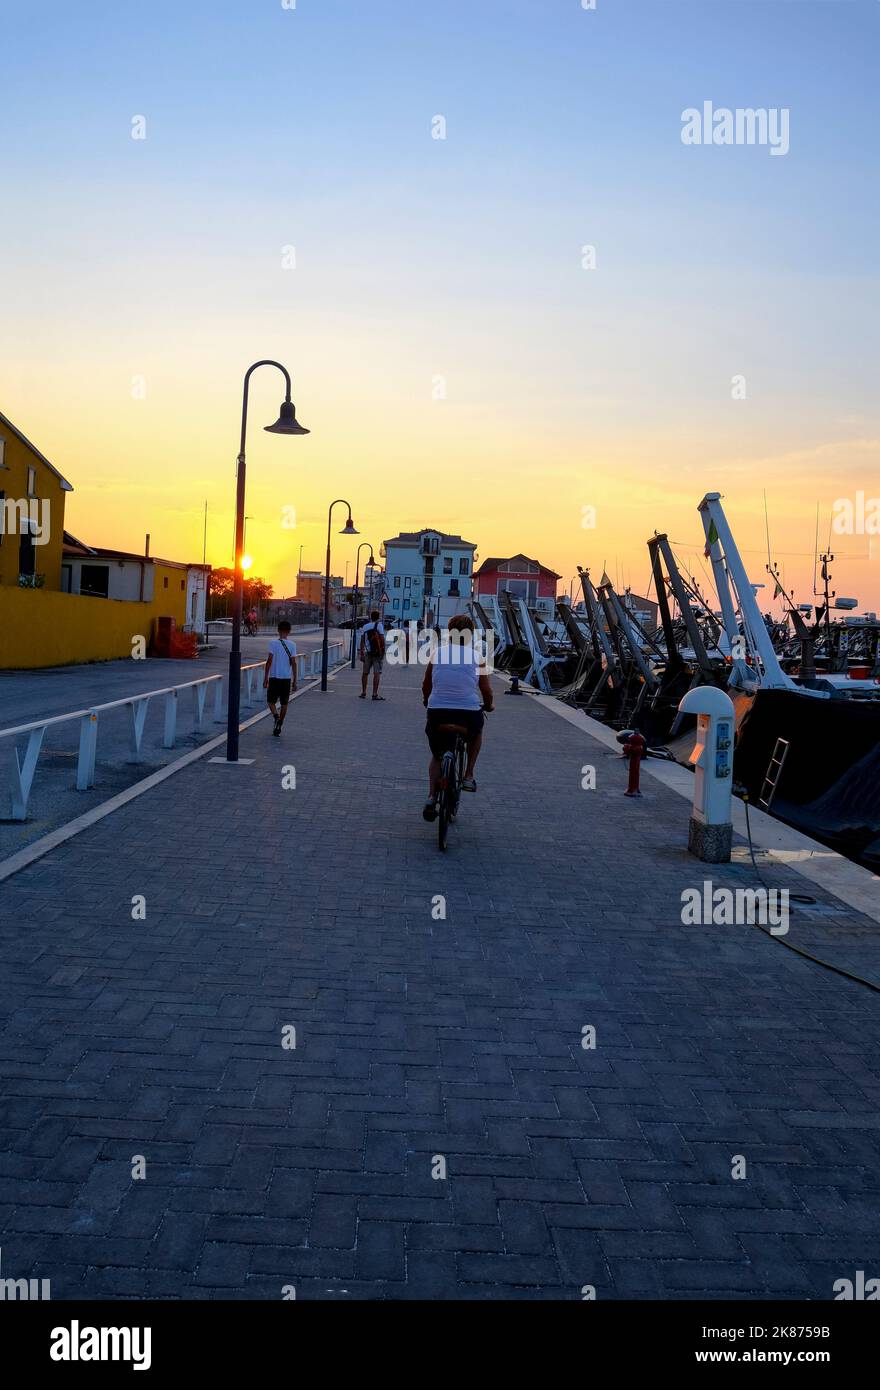 Juillet 2022 Senigallia, Italie: Vue sur le port au coucher du soleil sur les yachts et les bateaux, les gens marchant. Vue sur la ville. Carte postale de la ville Banque D'Images